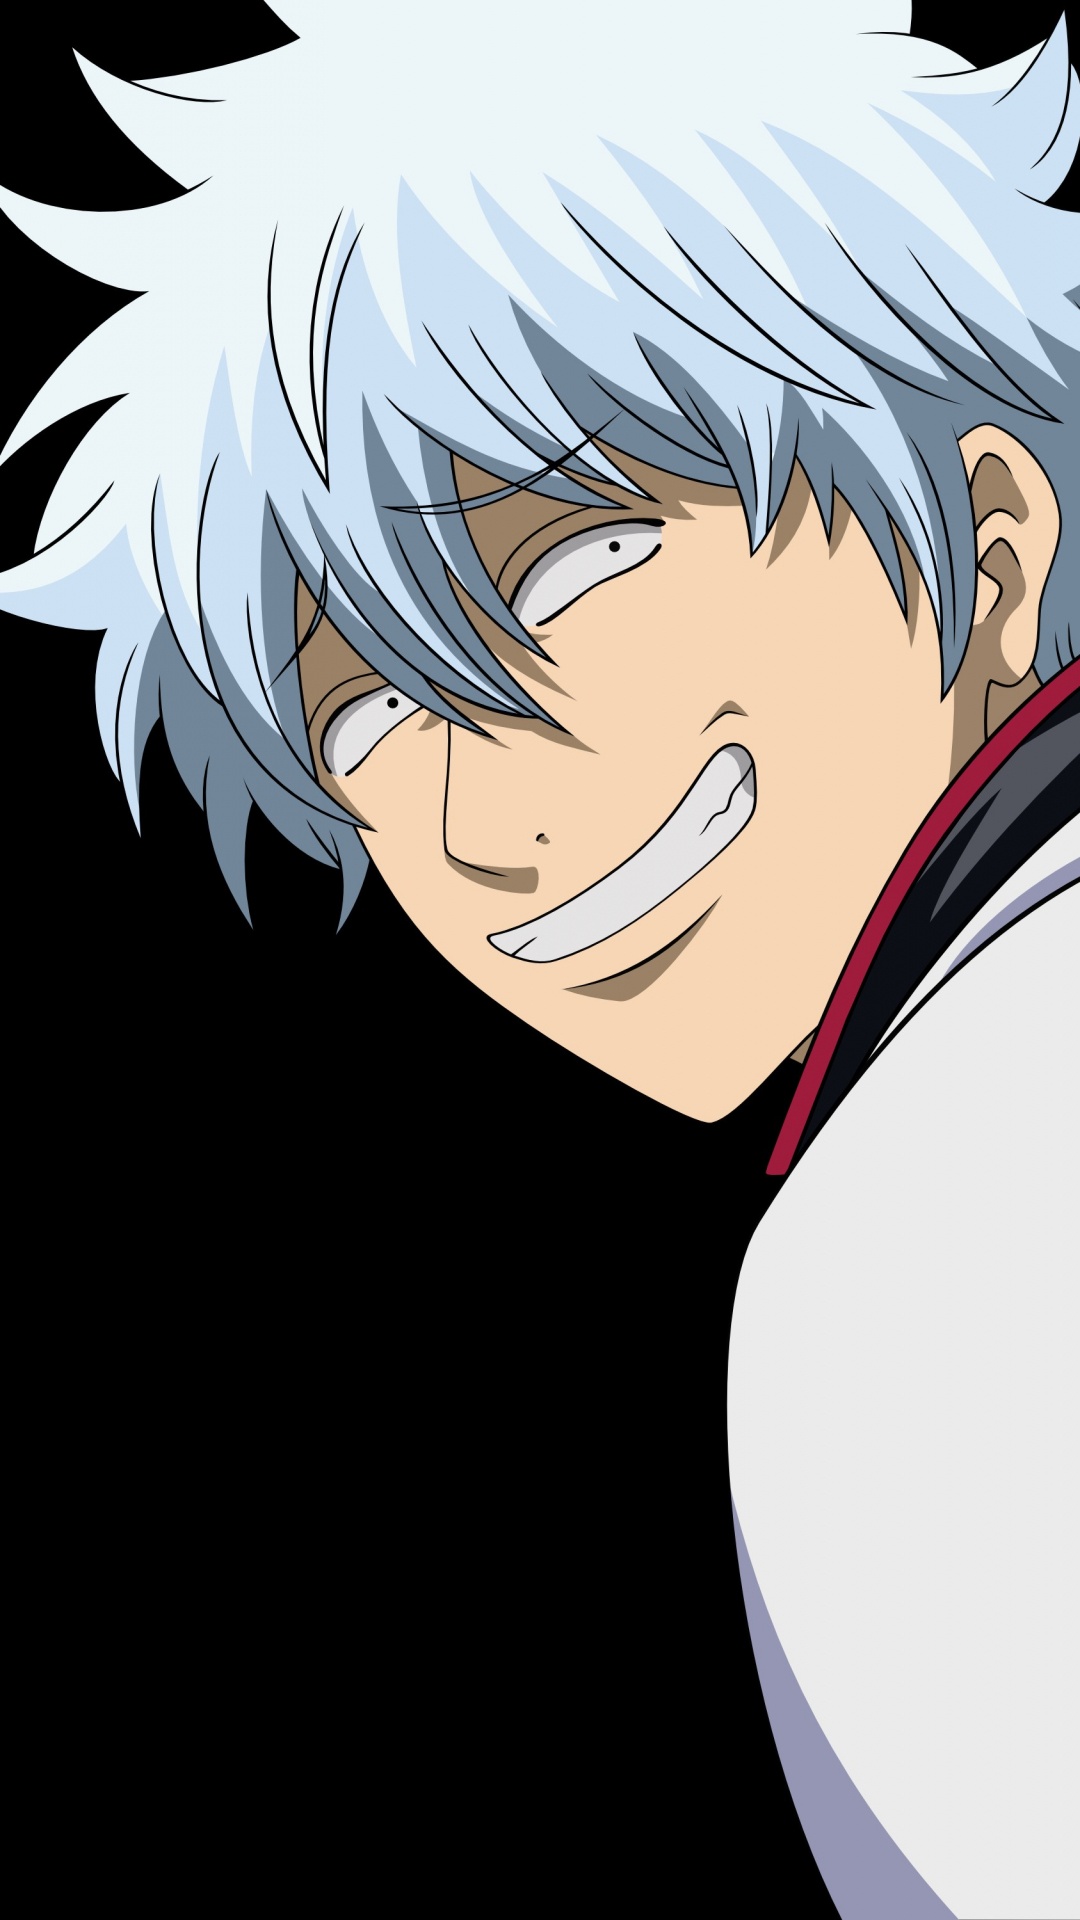 Personaje de Anime Masculino de Pelo Blanco. Wallpaper in 1080x1920 Resolution